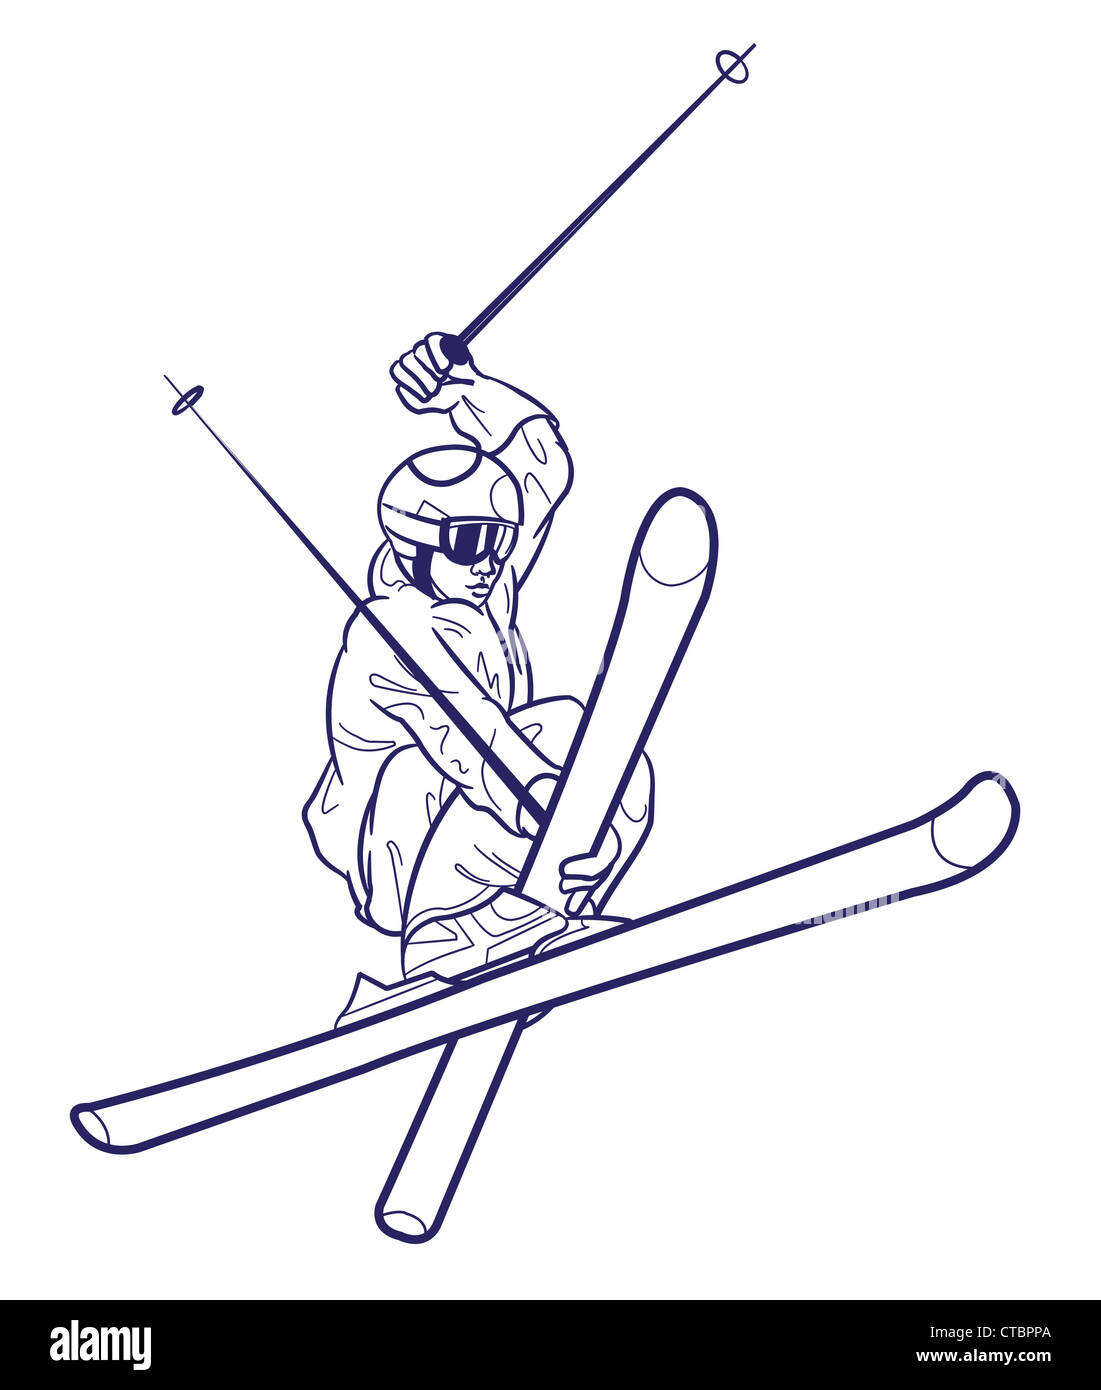 El dibujo de la persona de esquí. Foto de stock